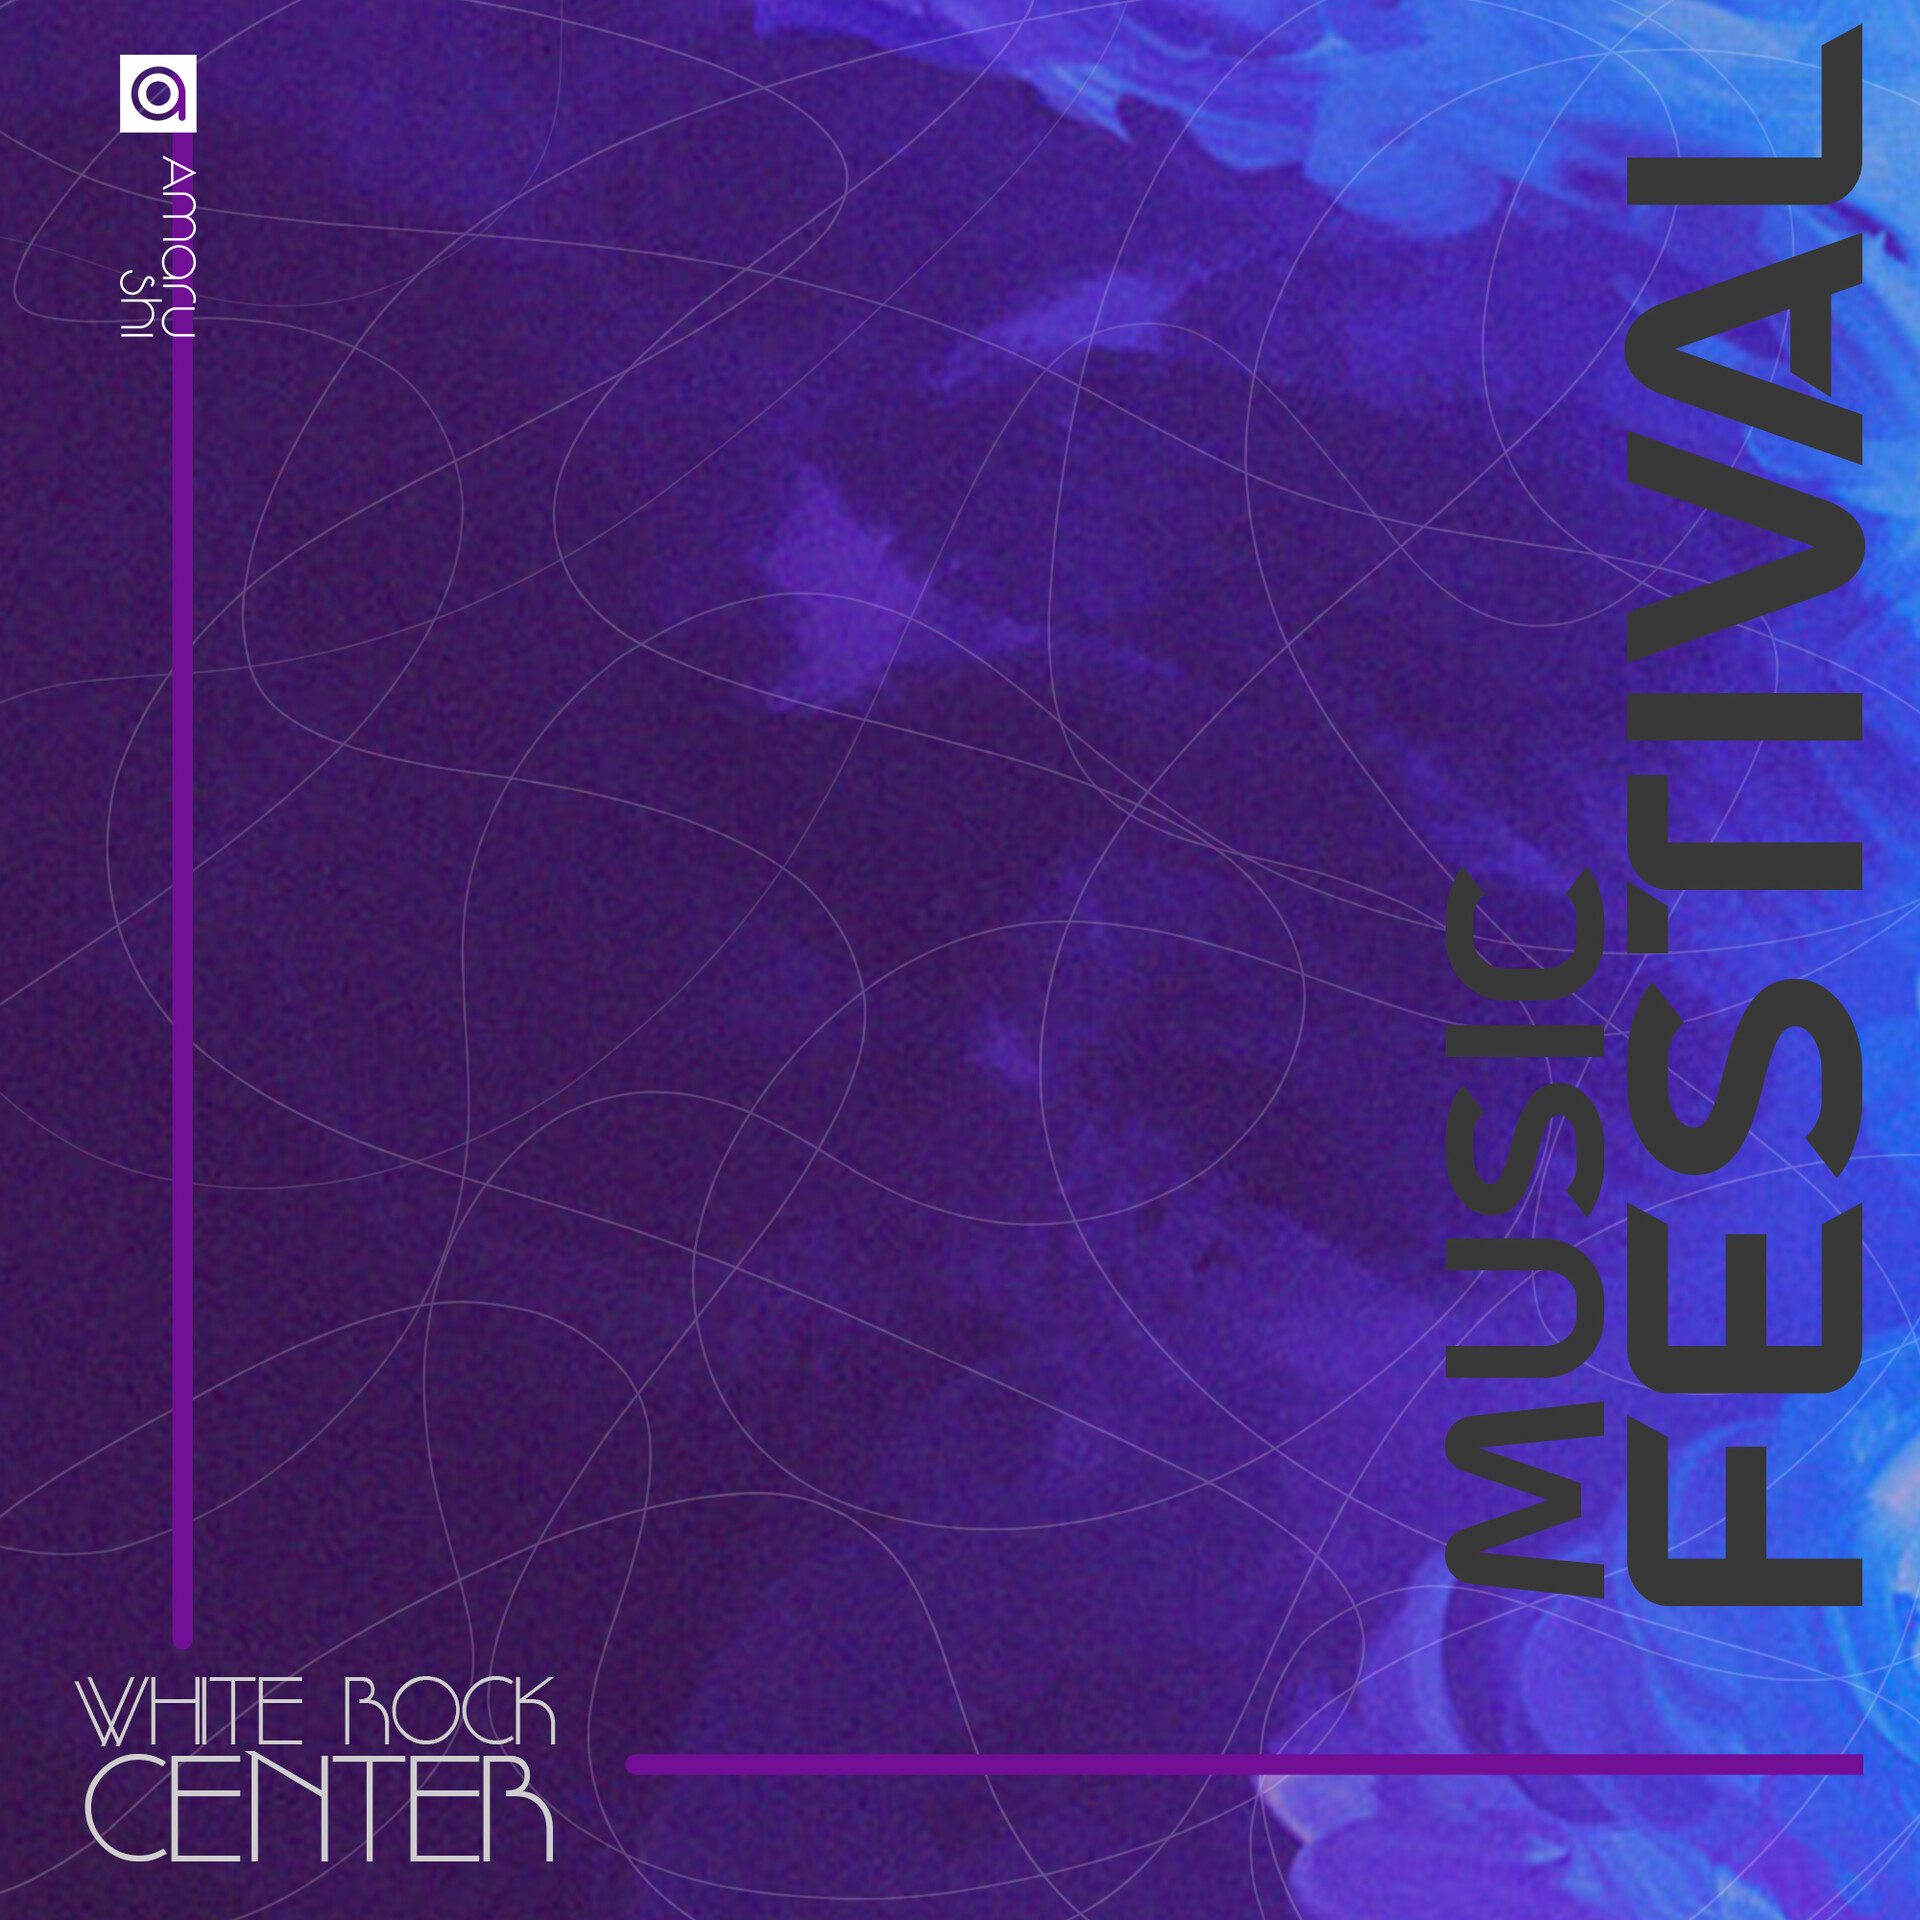 ArtStation - Music Festival Background Poster Design 2 2020